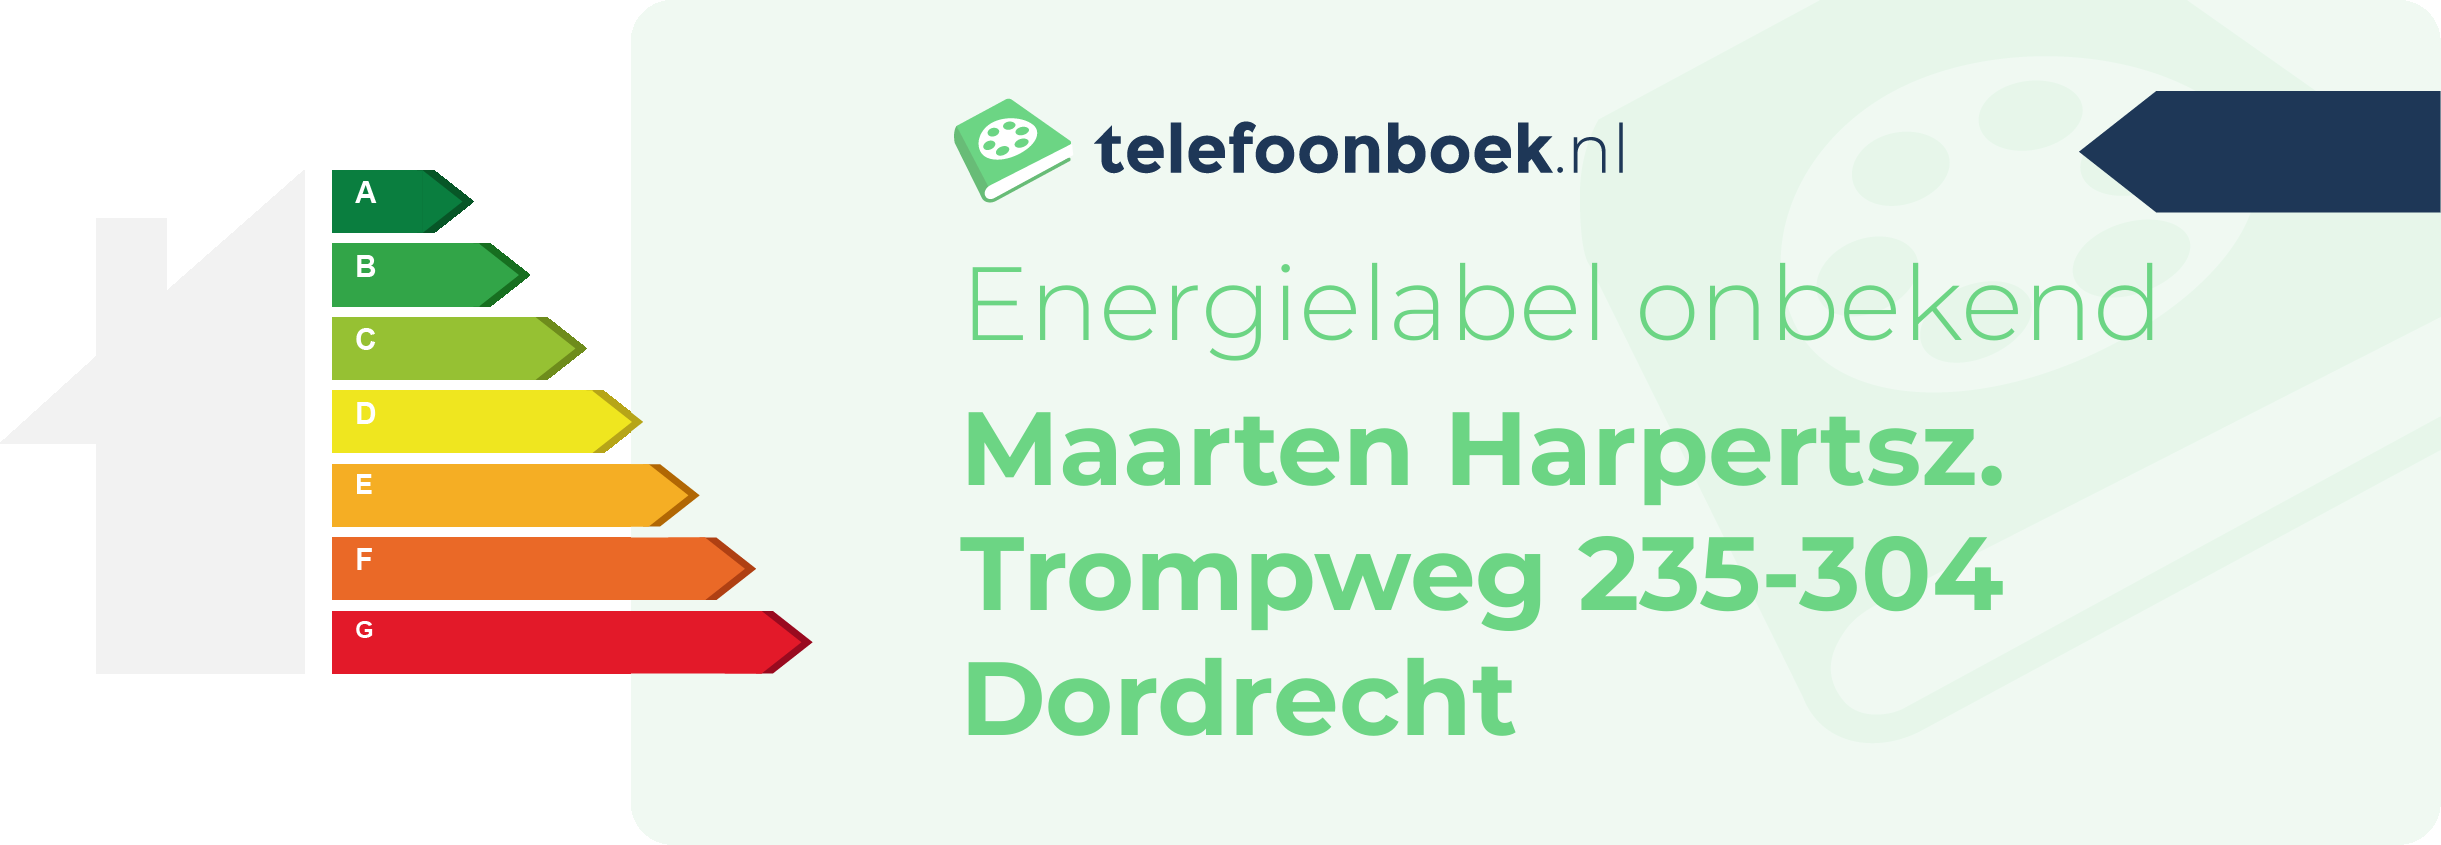 Energielabel Maarten Harpertsz. Trompweg 235-304 Dordrecht